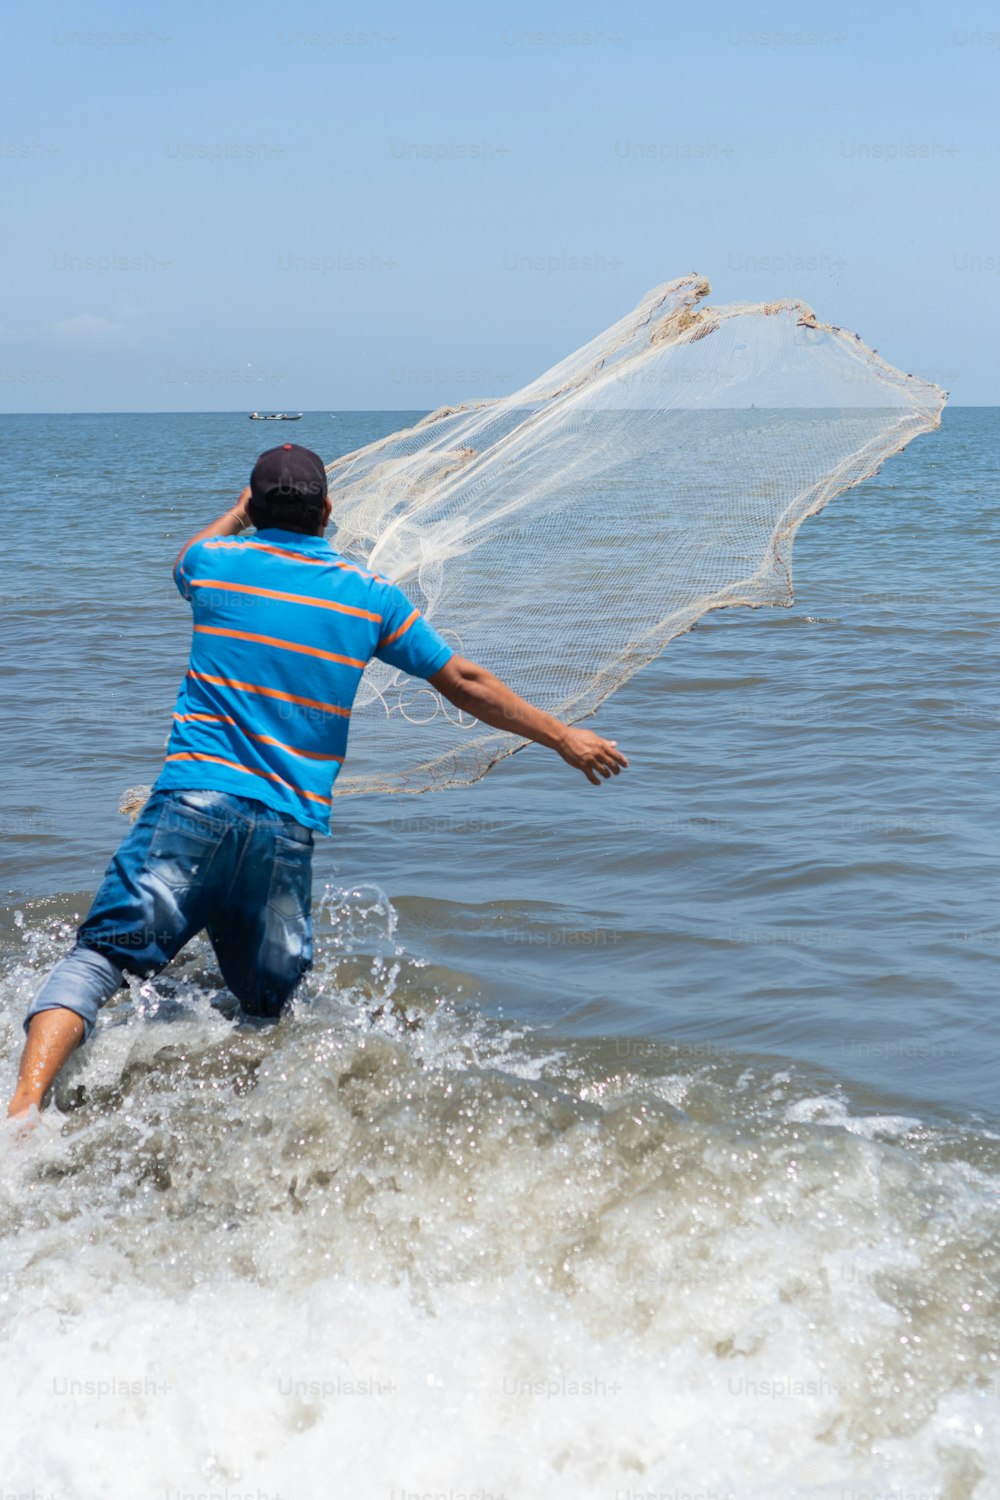 Fotos de pesca con atarraya [HQ]  Descargar imágenes gratis en Unsplash